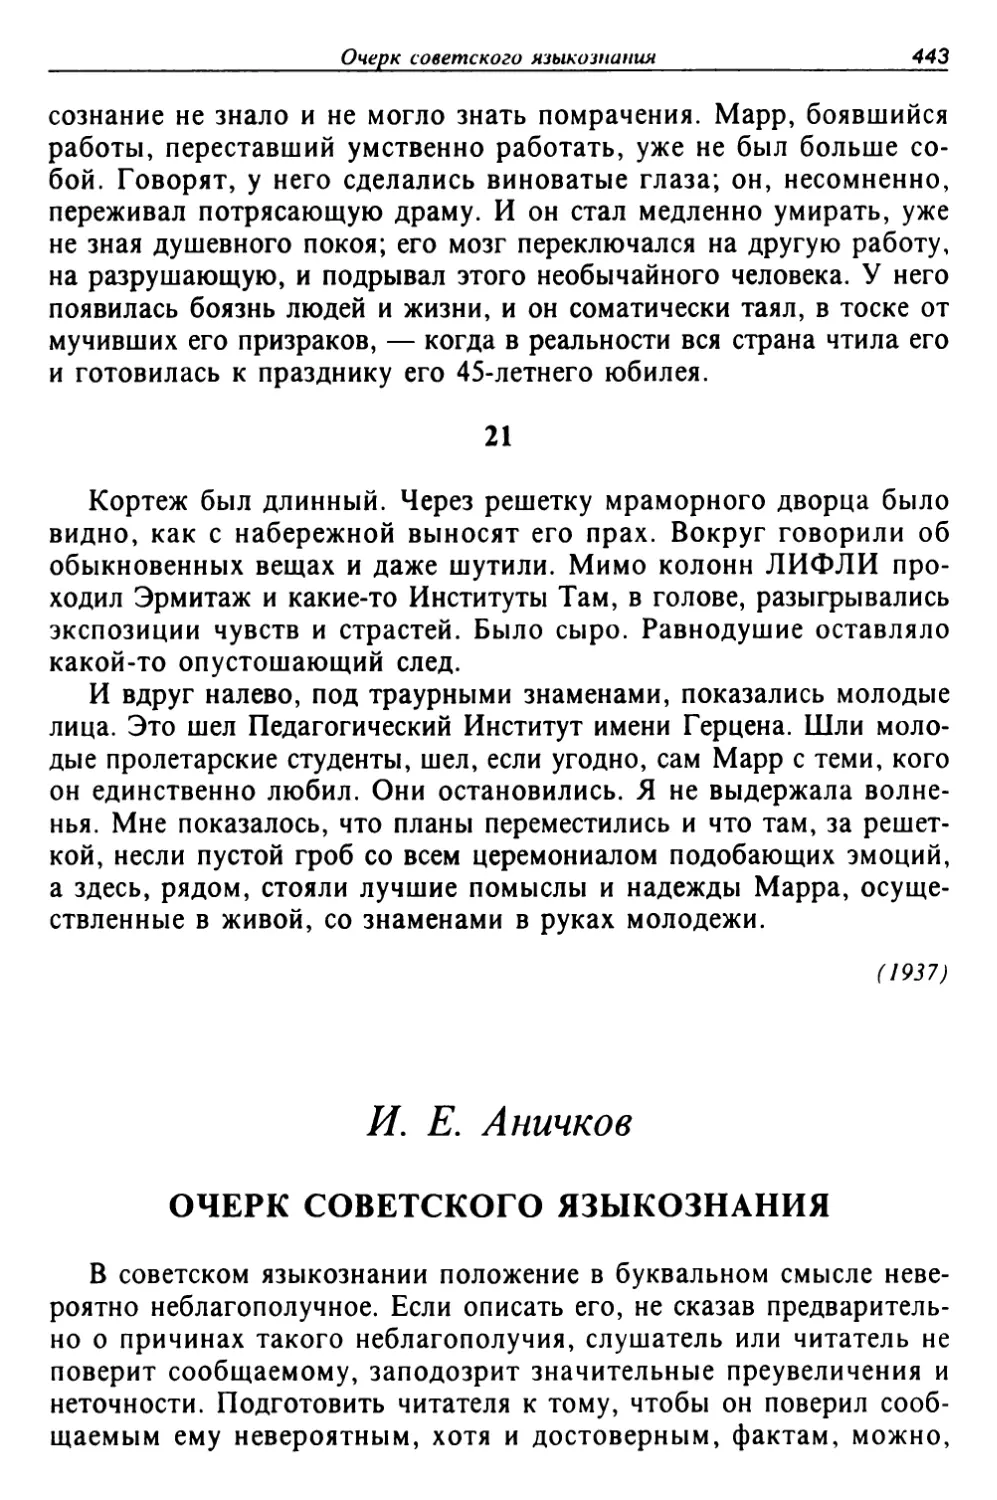 Аничков И. Е. Очерк советского языкознания